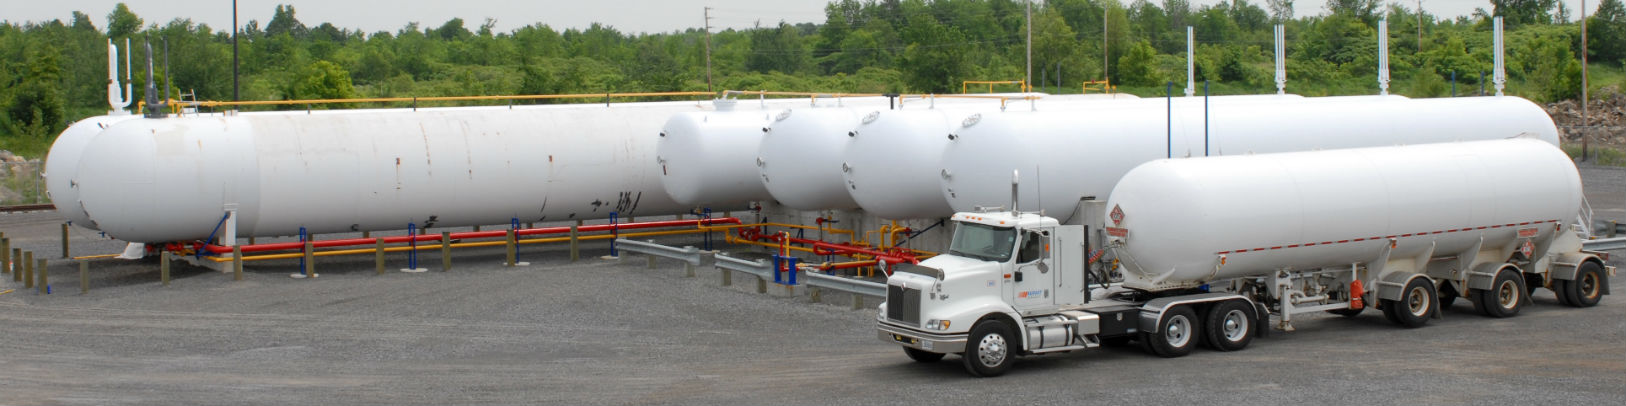 Notre grande capacité d'entreposage nous permet de recevoir 280 000 gallons